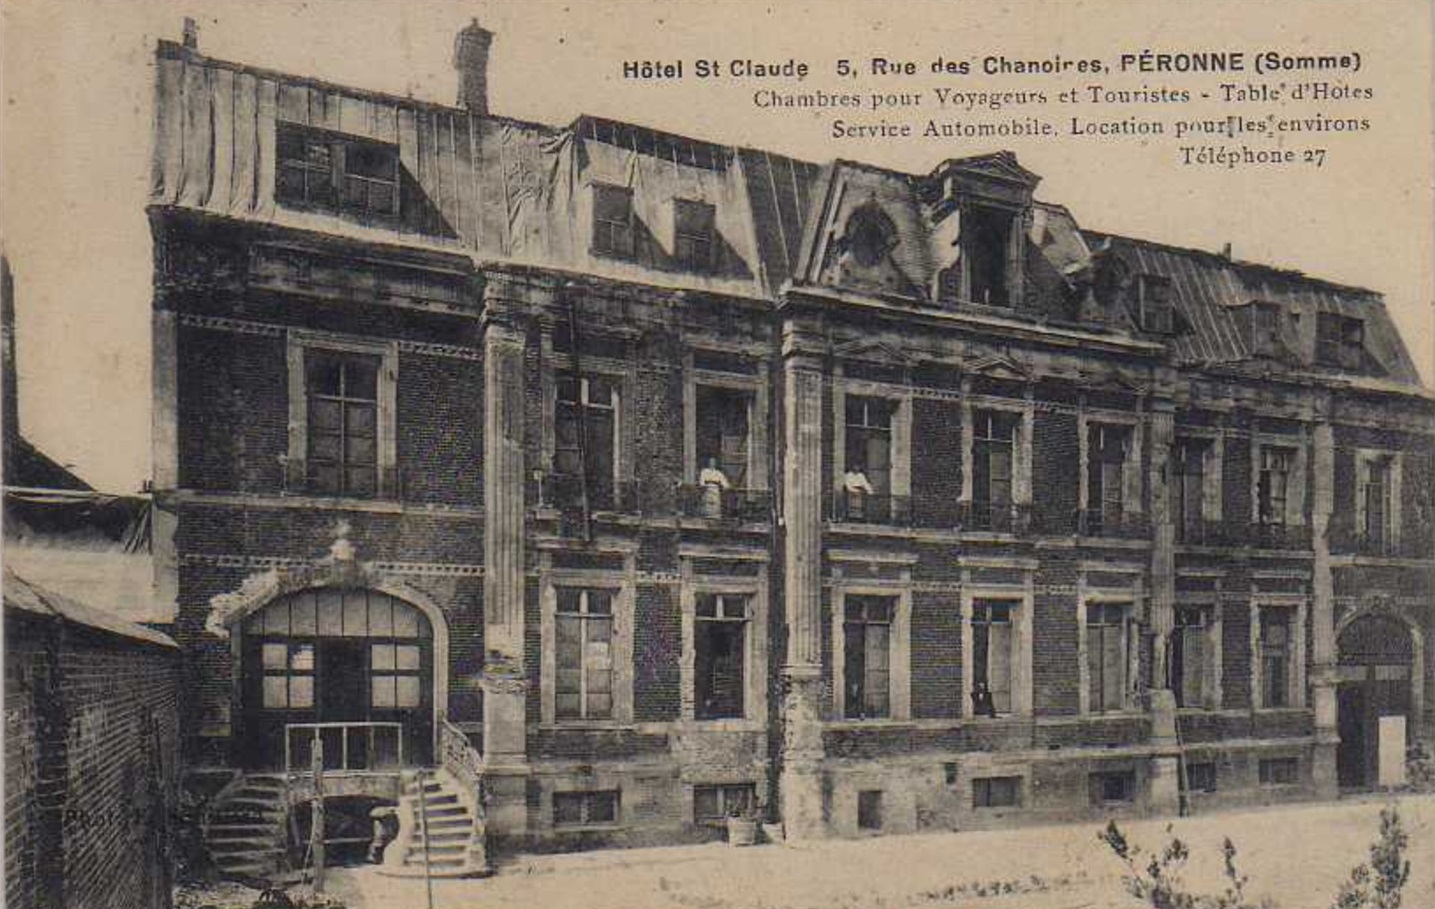 Hôtel Saint-Claude. carte postale (coll. part).